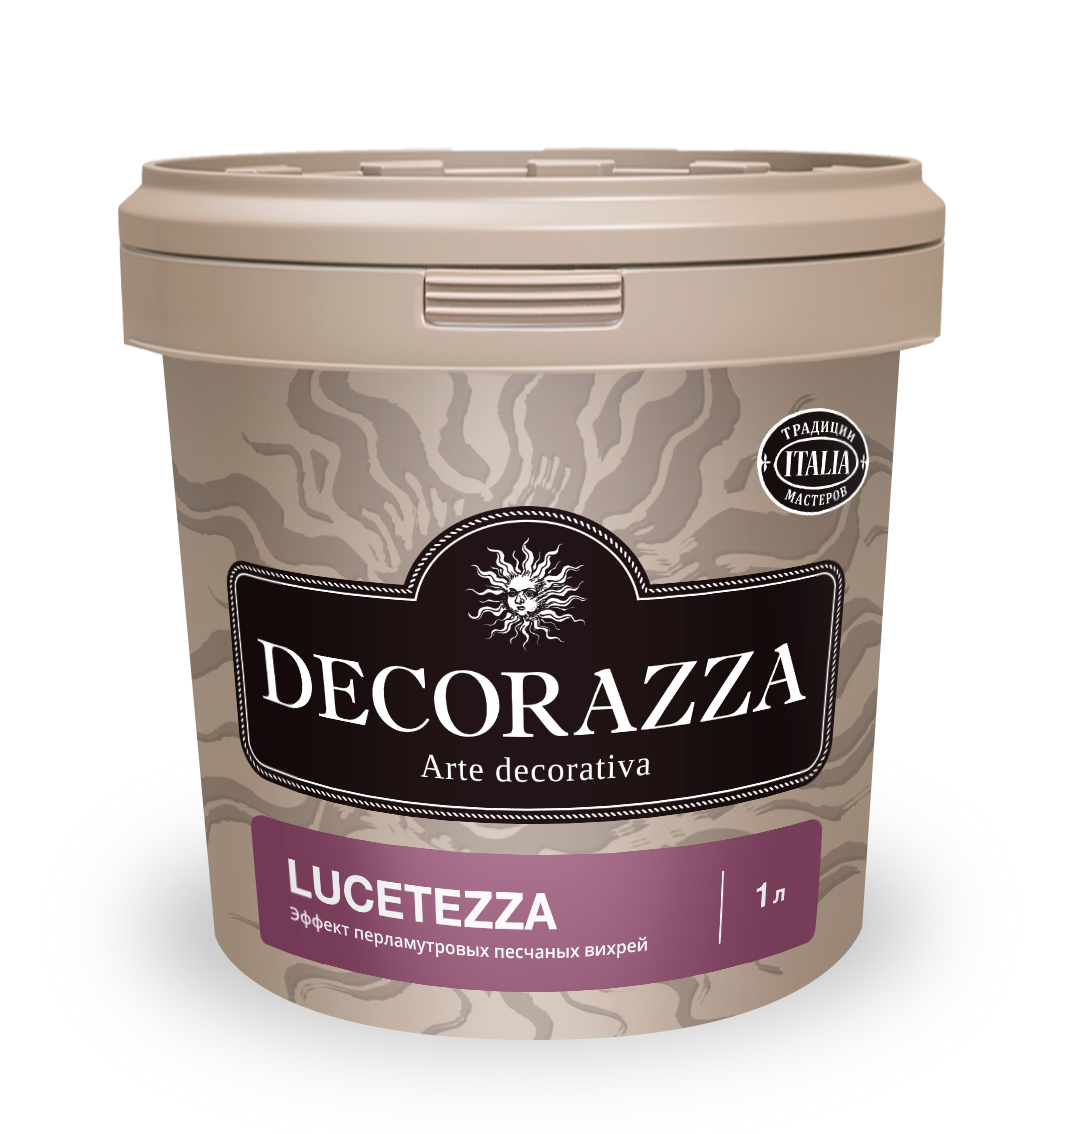 Декоративная штукатурка Decorazza Lucetezza Alluminio LC 700, 1 л xviii век античные мифы и просветительские утопии